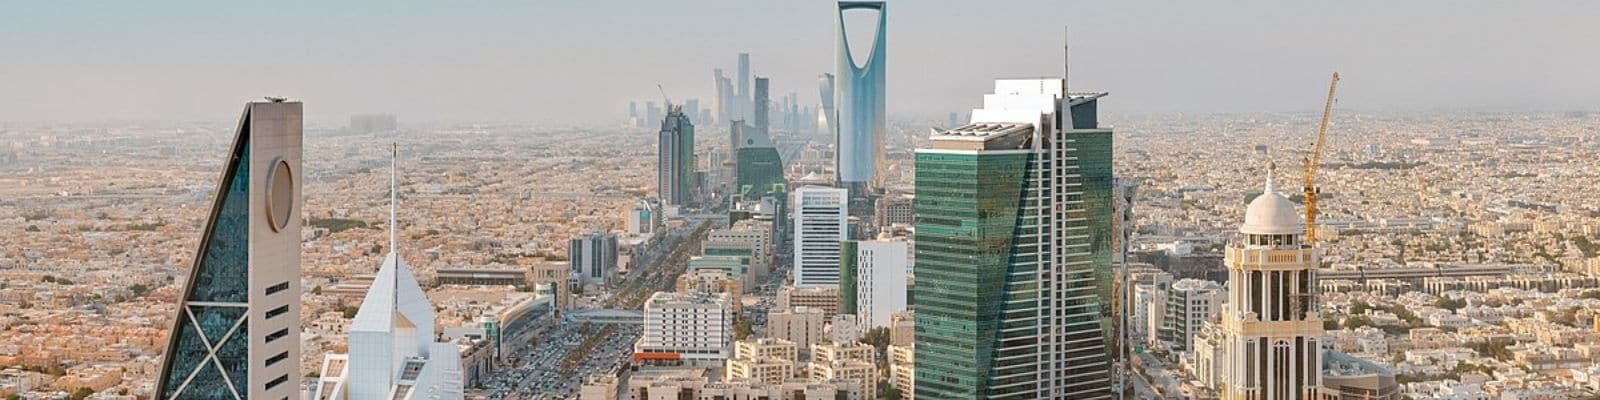 digital marketing courses in Riyadh Saudi Arabia